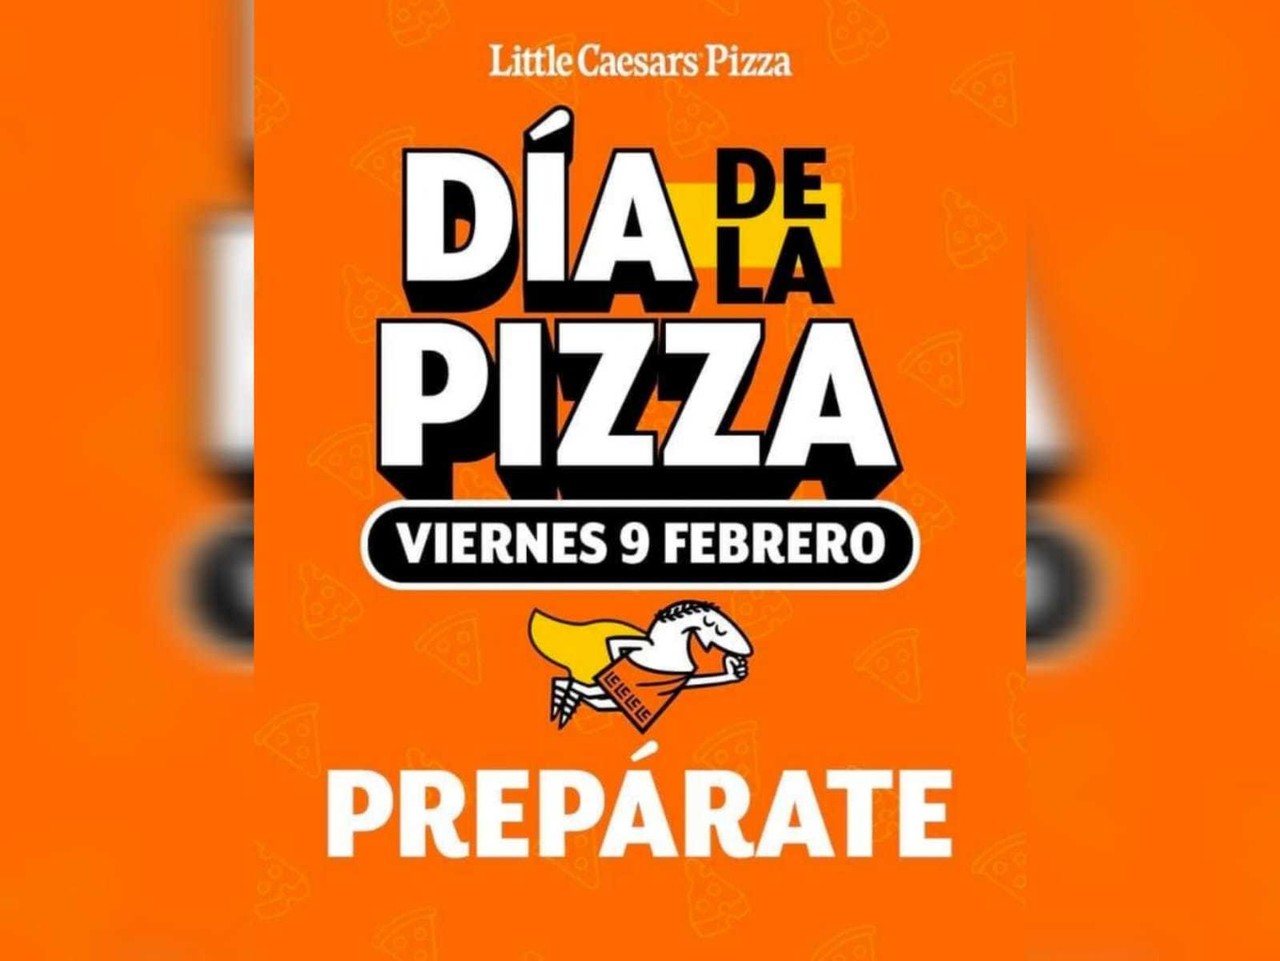 Esta iniciativa de Little Caesars promete satisfacer los antojos de los amantes de la pizza. Foto: Little Caesars.